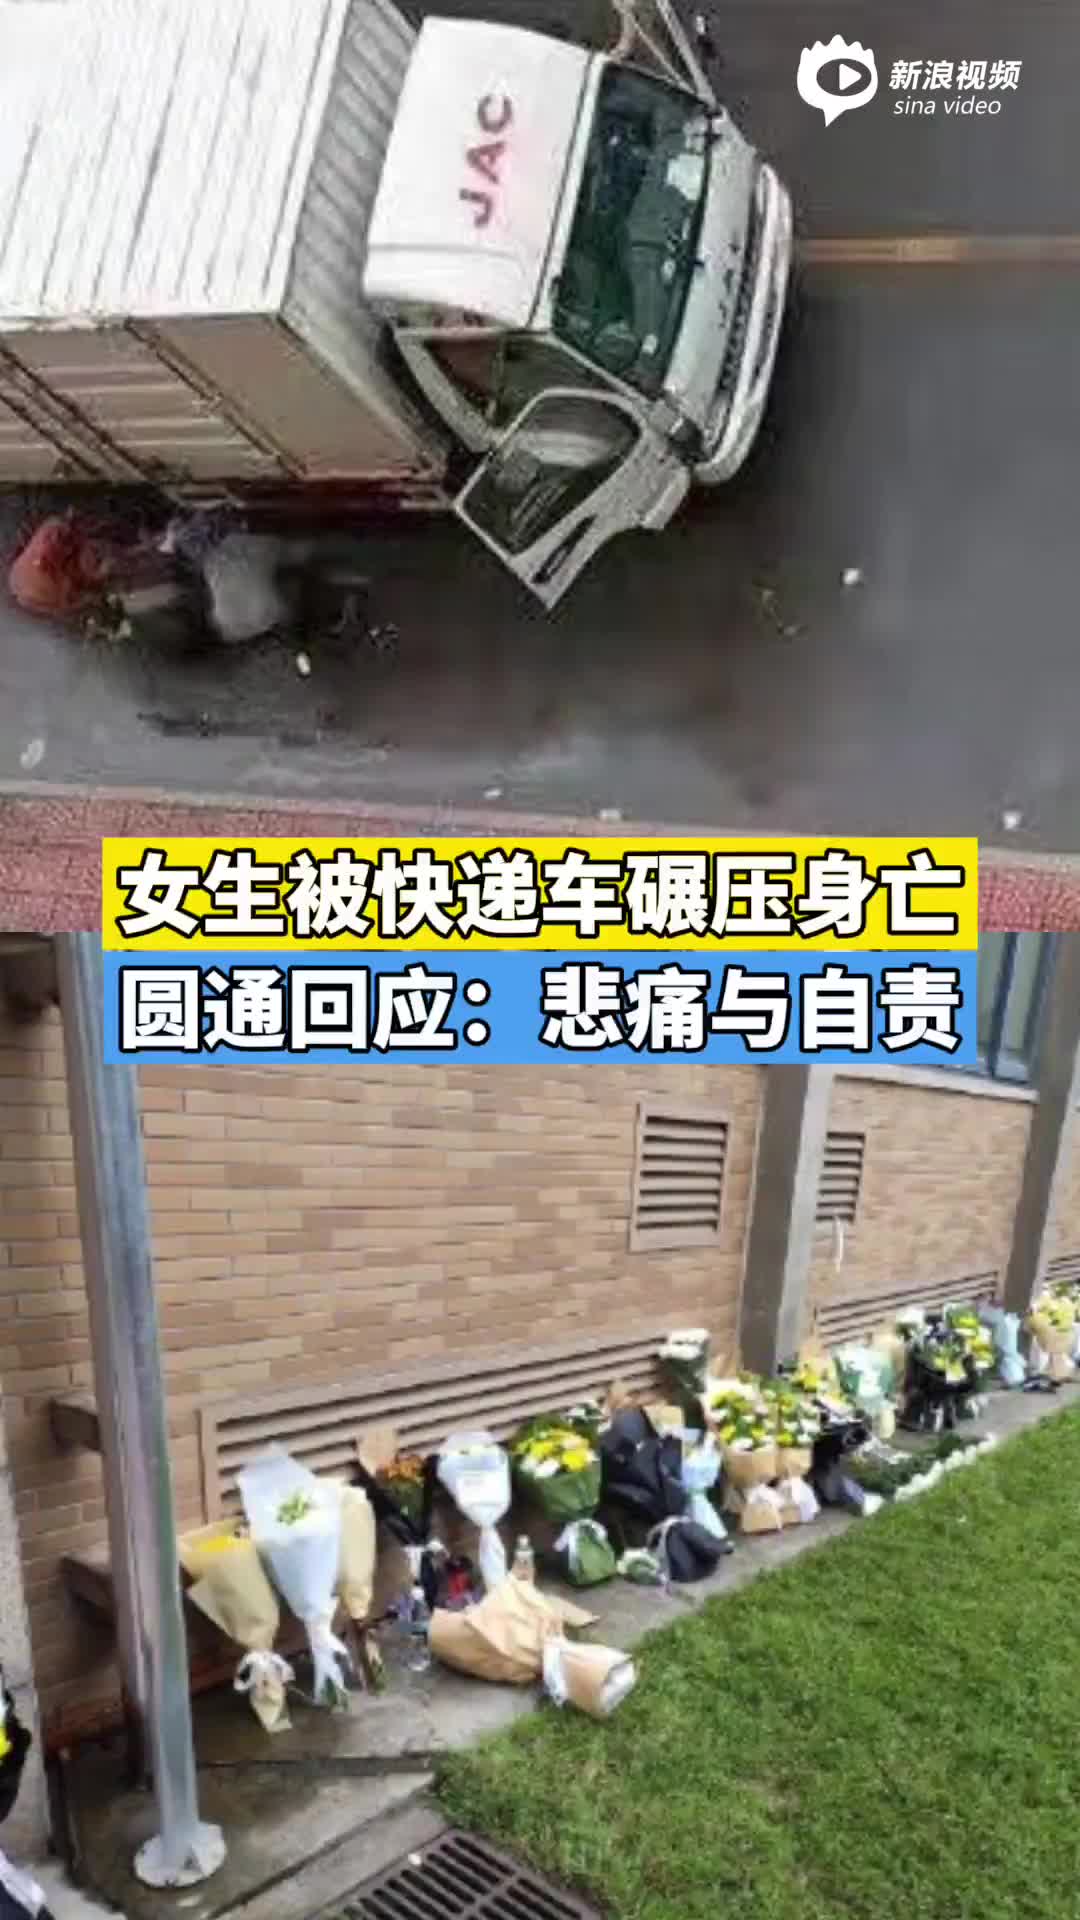 监拍：两货车迎面相撞瞬间 司机跳车逃生反被碾压身亡_凤凰网视频_凤凰网